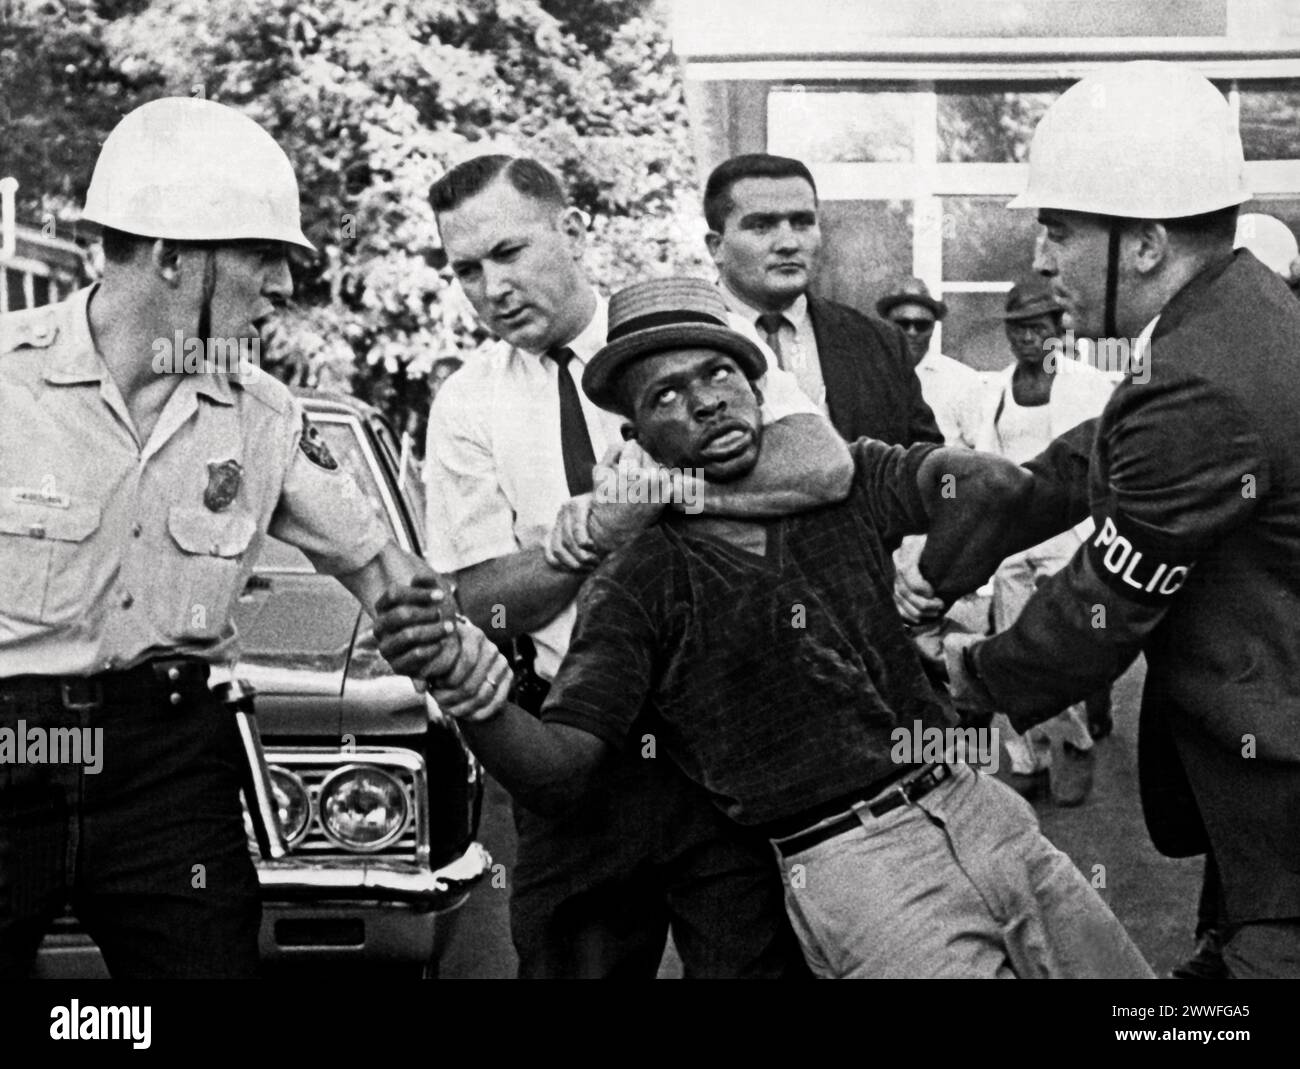 Atlanta, Géorgie 1966 policiers et détectives en civil traînant un manifestant noir vers un chariot rideau en attente lors d'une émeute qui a éclaté à Atlanta en 1966. Banque D'Images